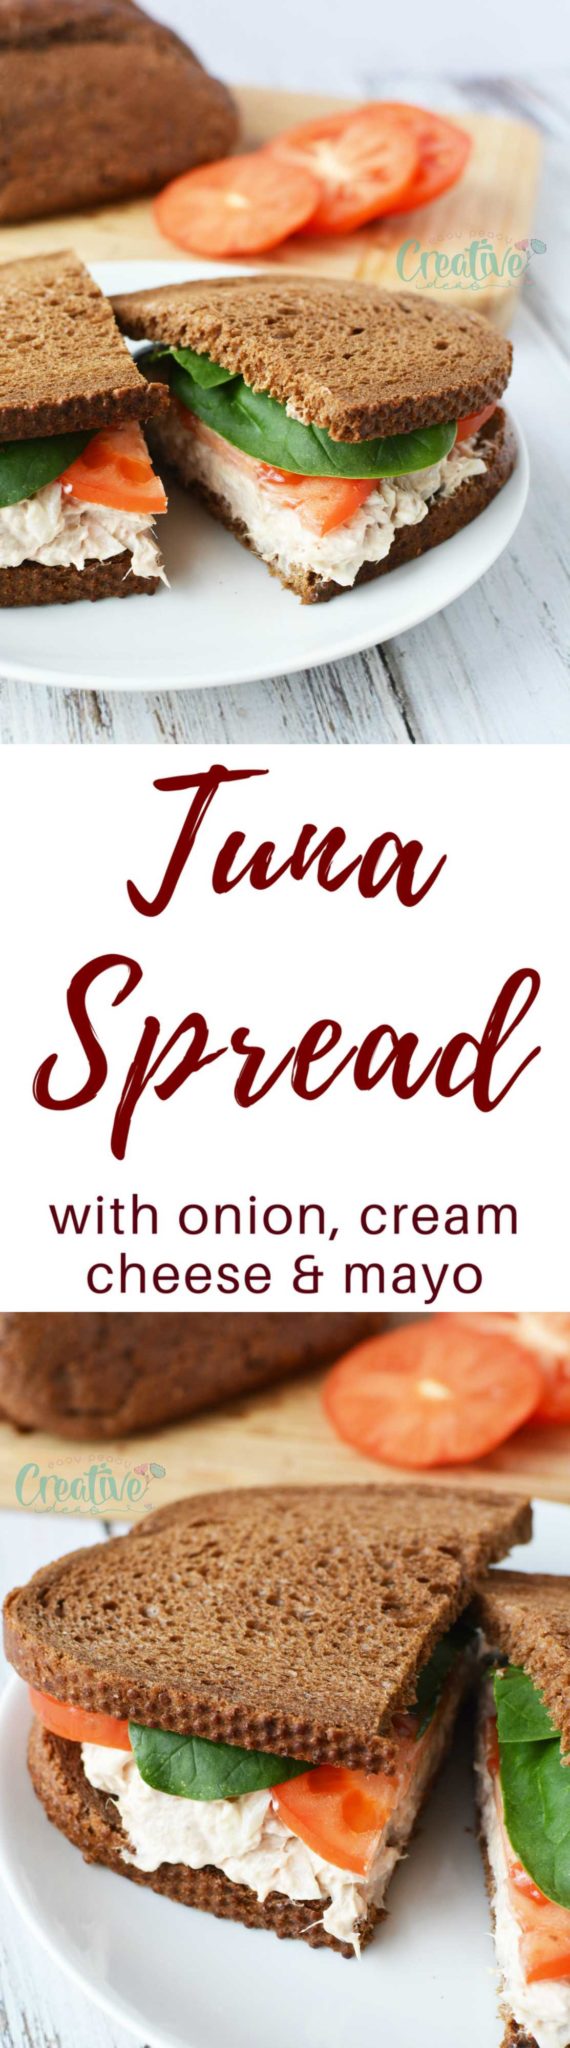 Tuna Spread Recipe With Onion, Mayo & Cream Cheese